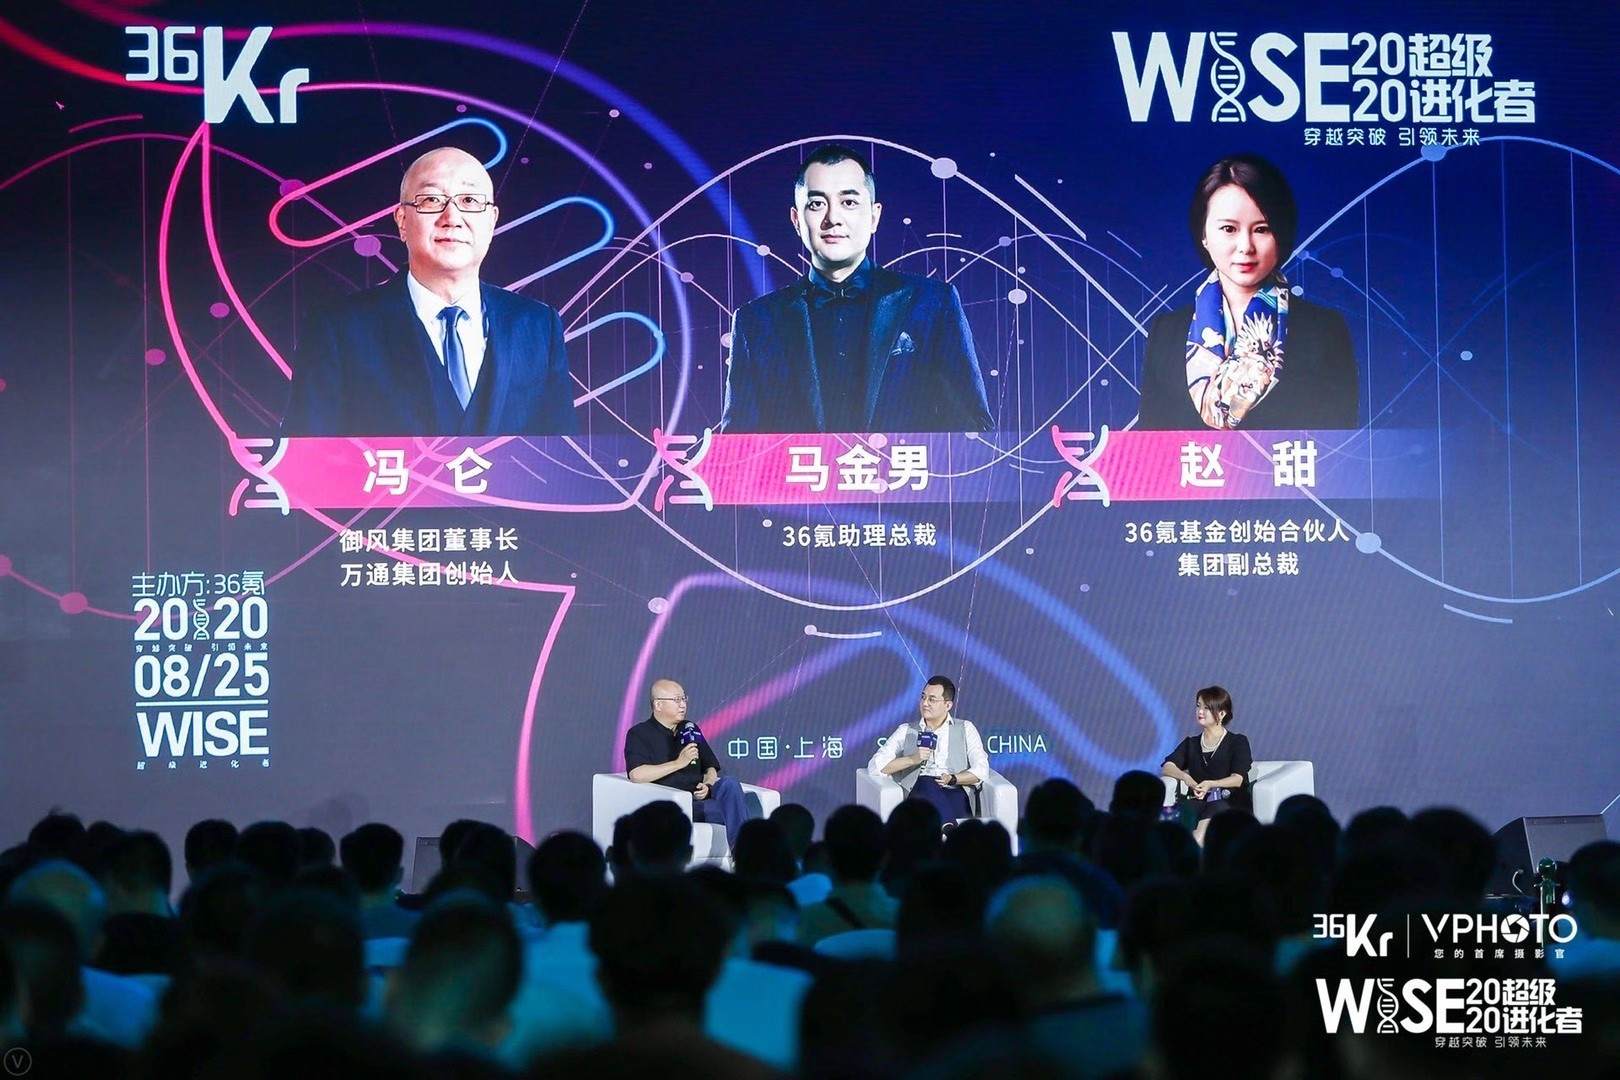 冯仑：创业者要走正道、吃软饭、挣硬钱 | WISE2020超级进化者大会